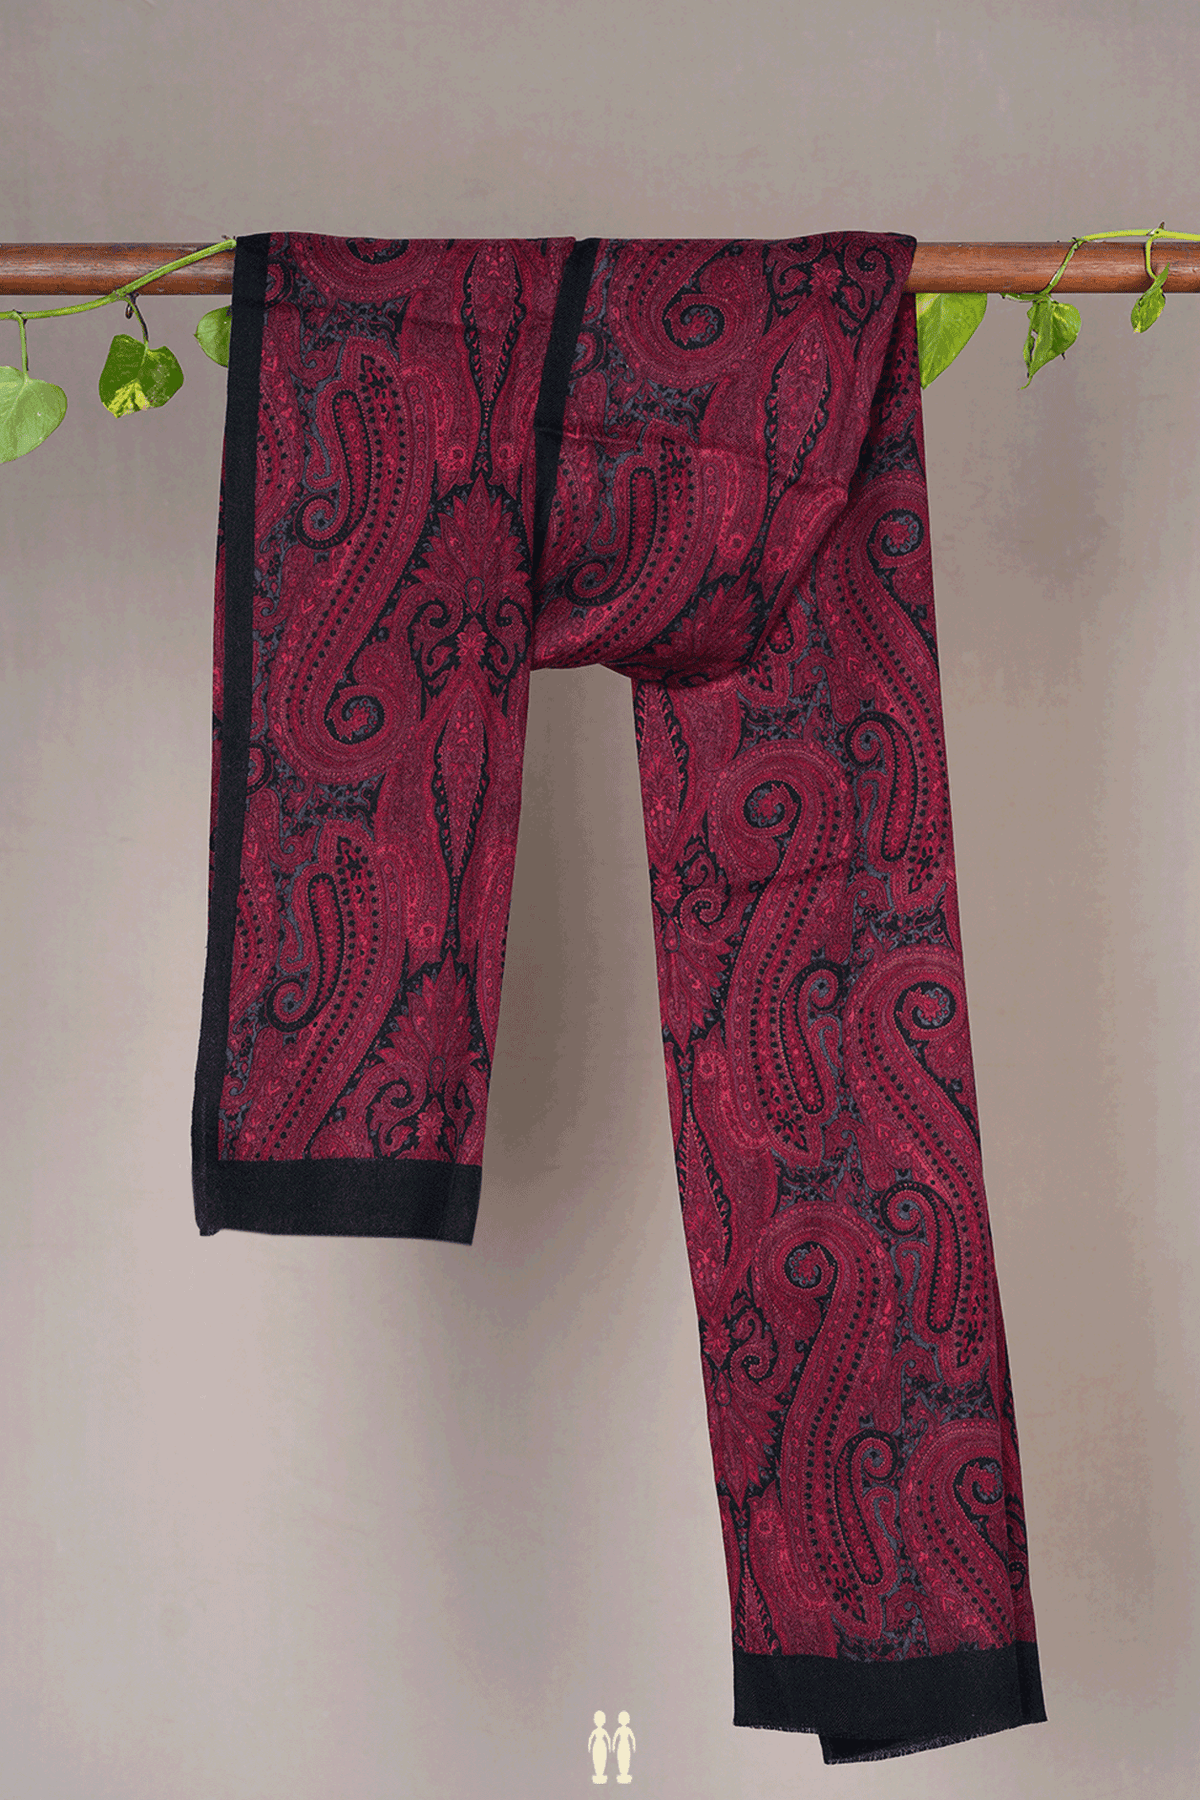 Allover Paisley Design Burgundy Red Woolen Shawl